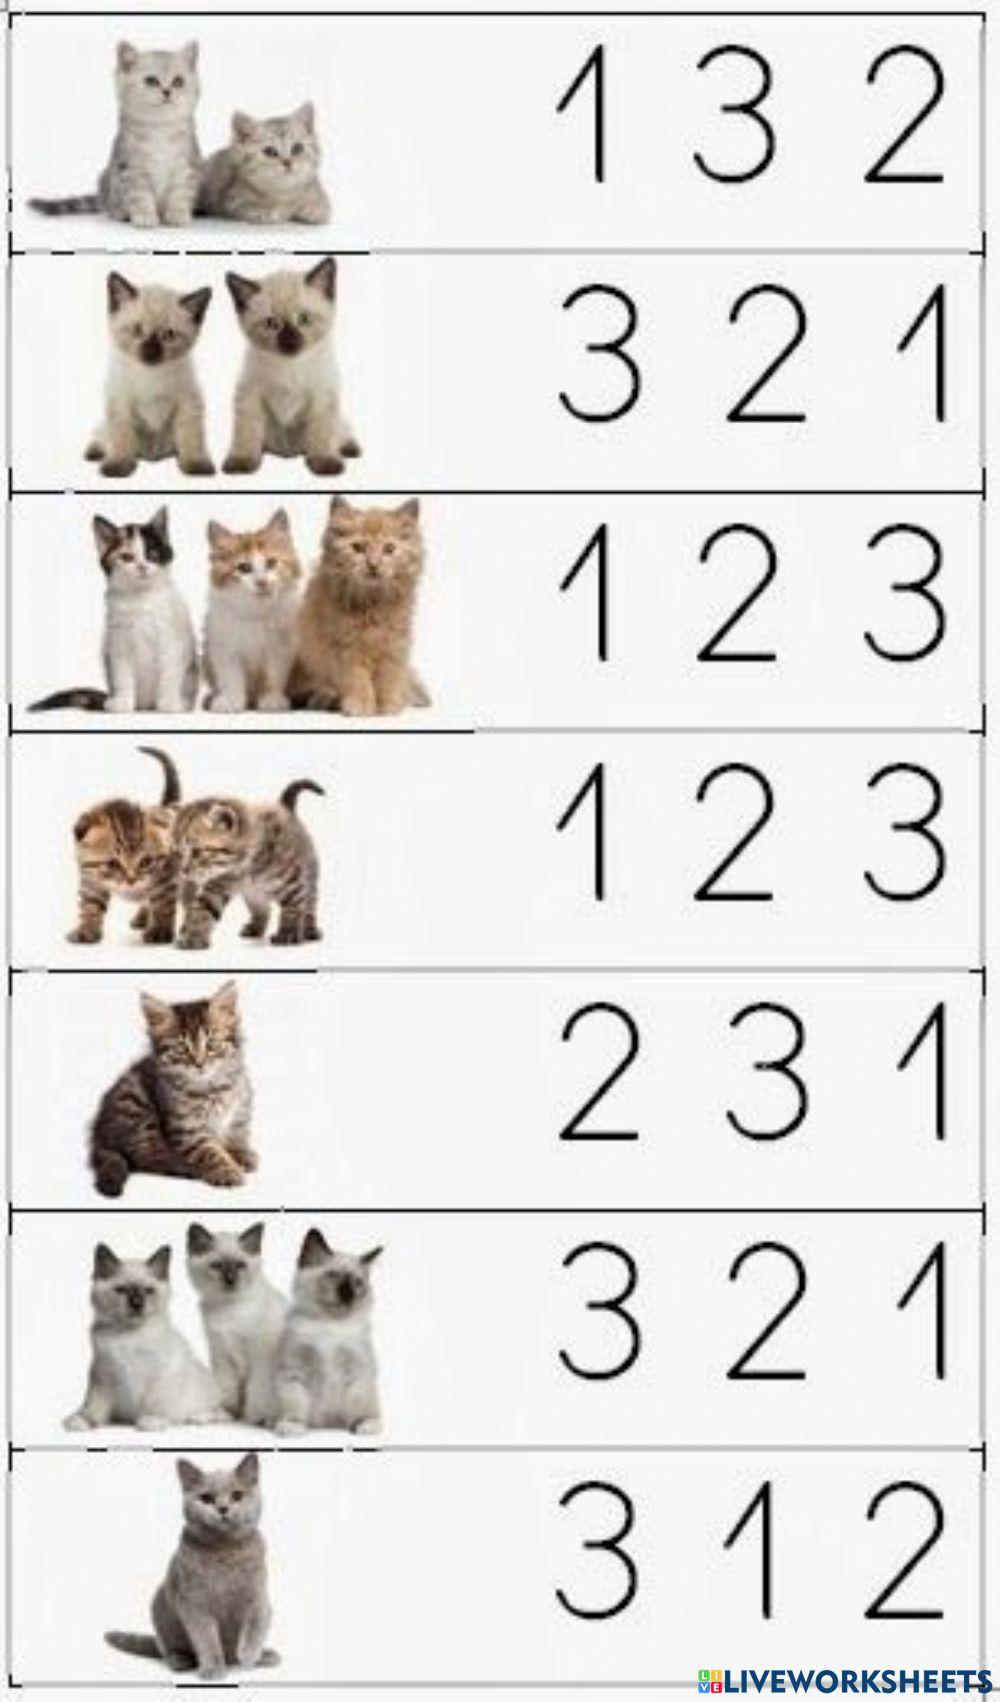 Menghitung jumlah hewan 1-3